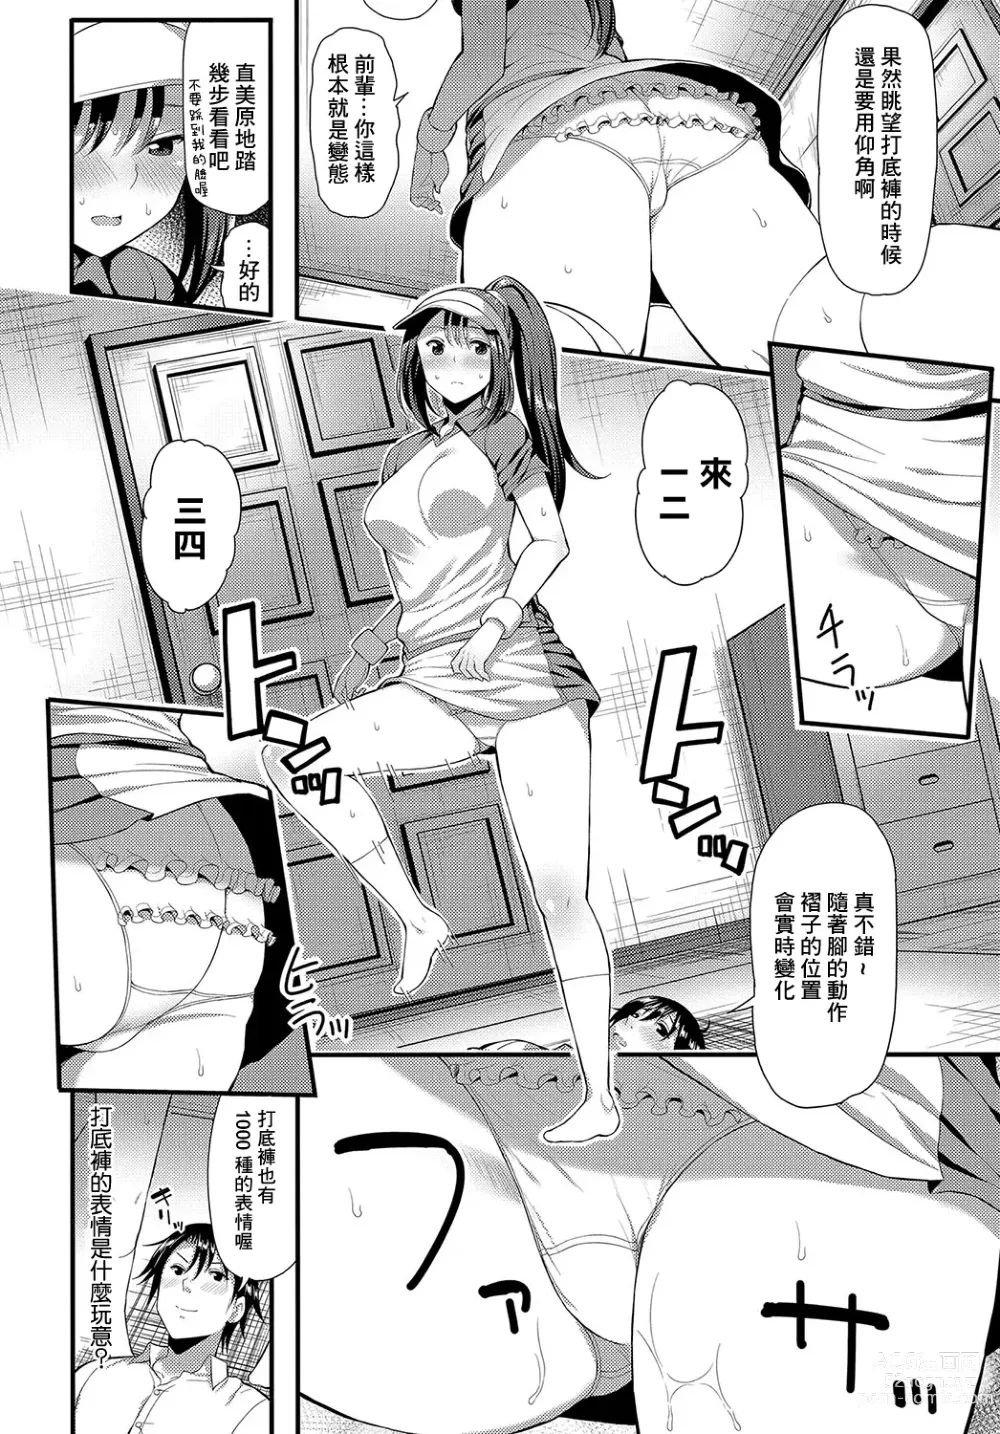 Page 4 of manga UnSkor Suko Suko!?